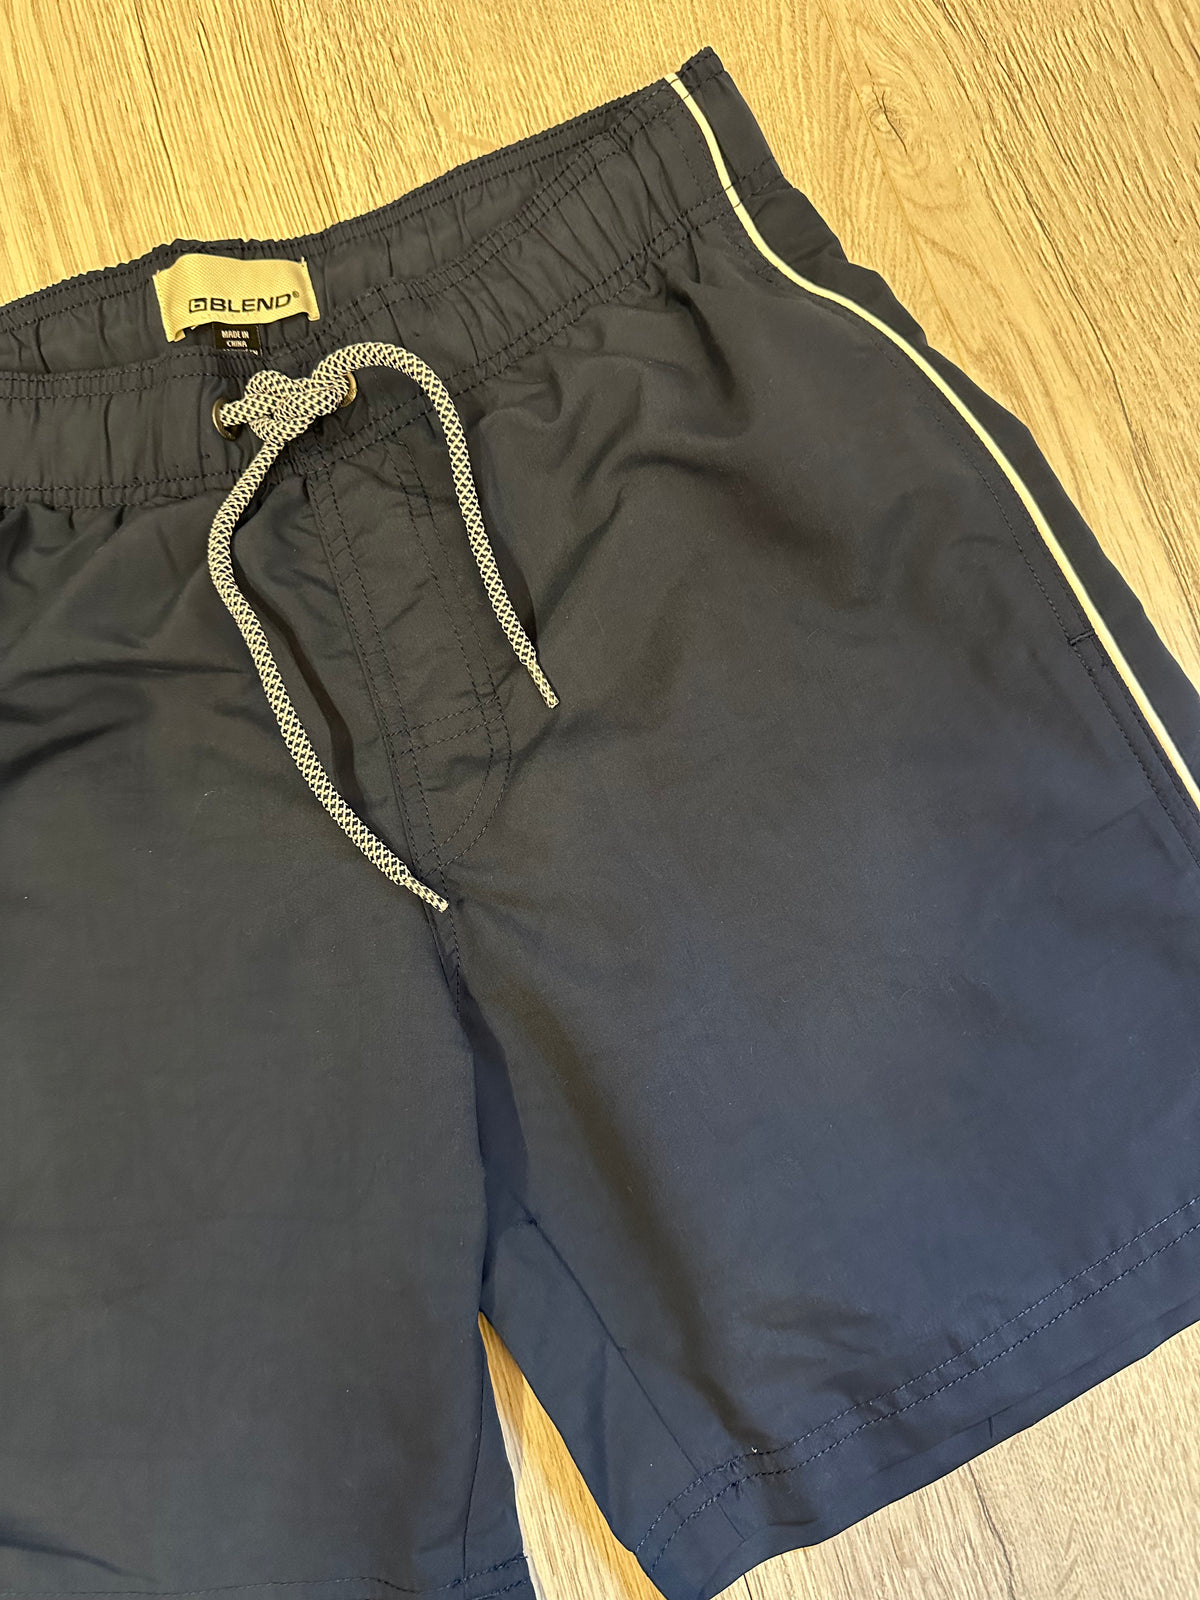 Blend Swim Shorts In Navy/Print When Wet